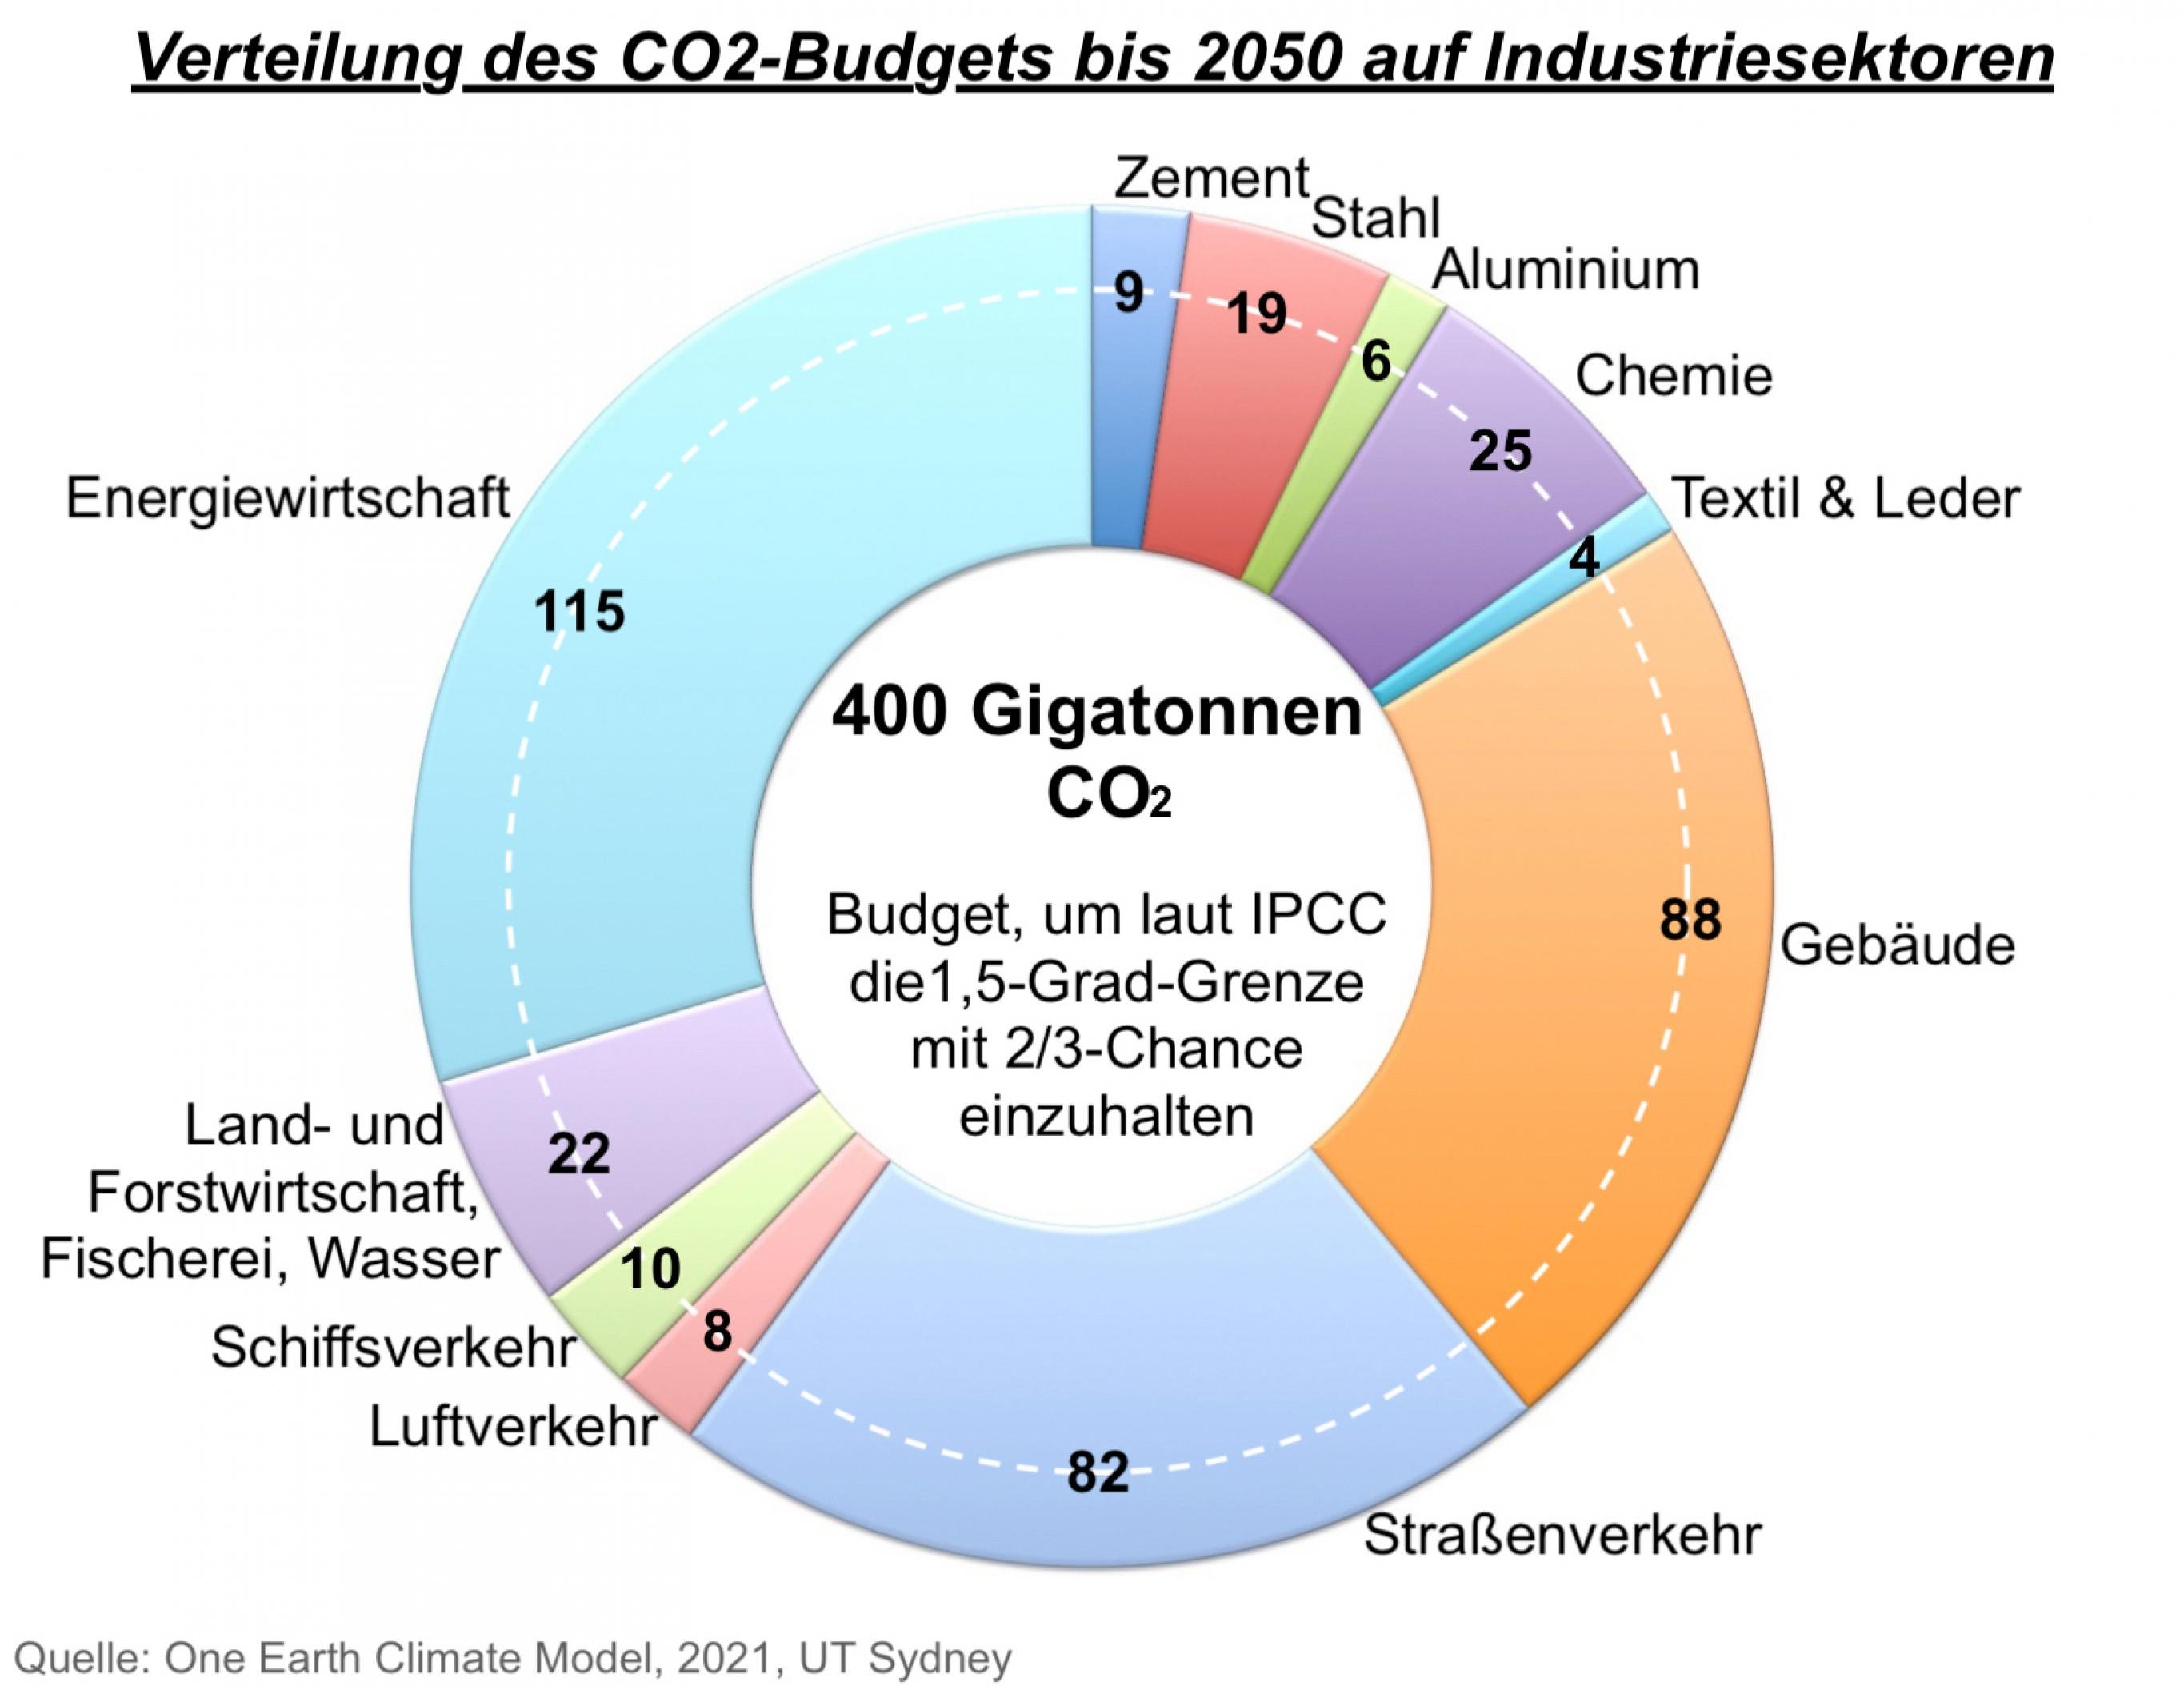 Die Grafik zeigt in einer Art Tortendiagramm, welche Mengen CO2 zum Beispiel Energiewirtschaft, Bau- und Gebäudesektor sowie Straßenverkehr bis 2050 noch ausstoßen dürfen. Es sind 115, 88 bzw 82 Milliarden Tonnen. Die kleinsten Anteile hingegen entfallen auf Textil und Leder (4), Aluminium (6) und Flugindustrie (8 Milliarden Tonnen).